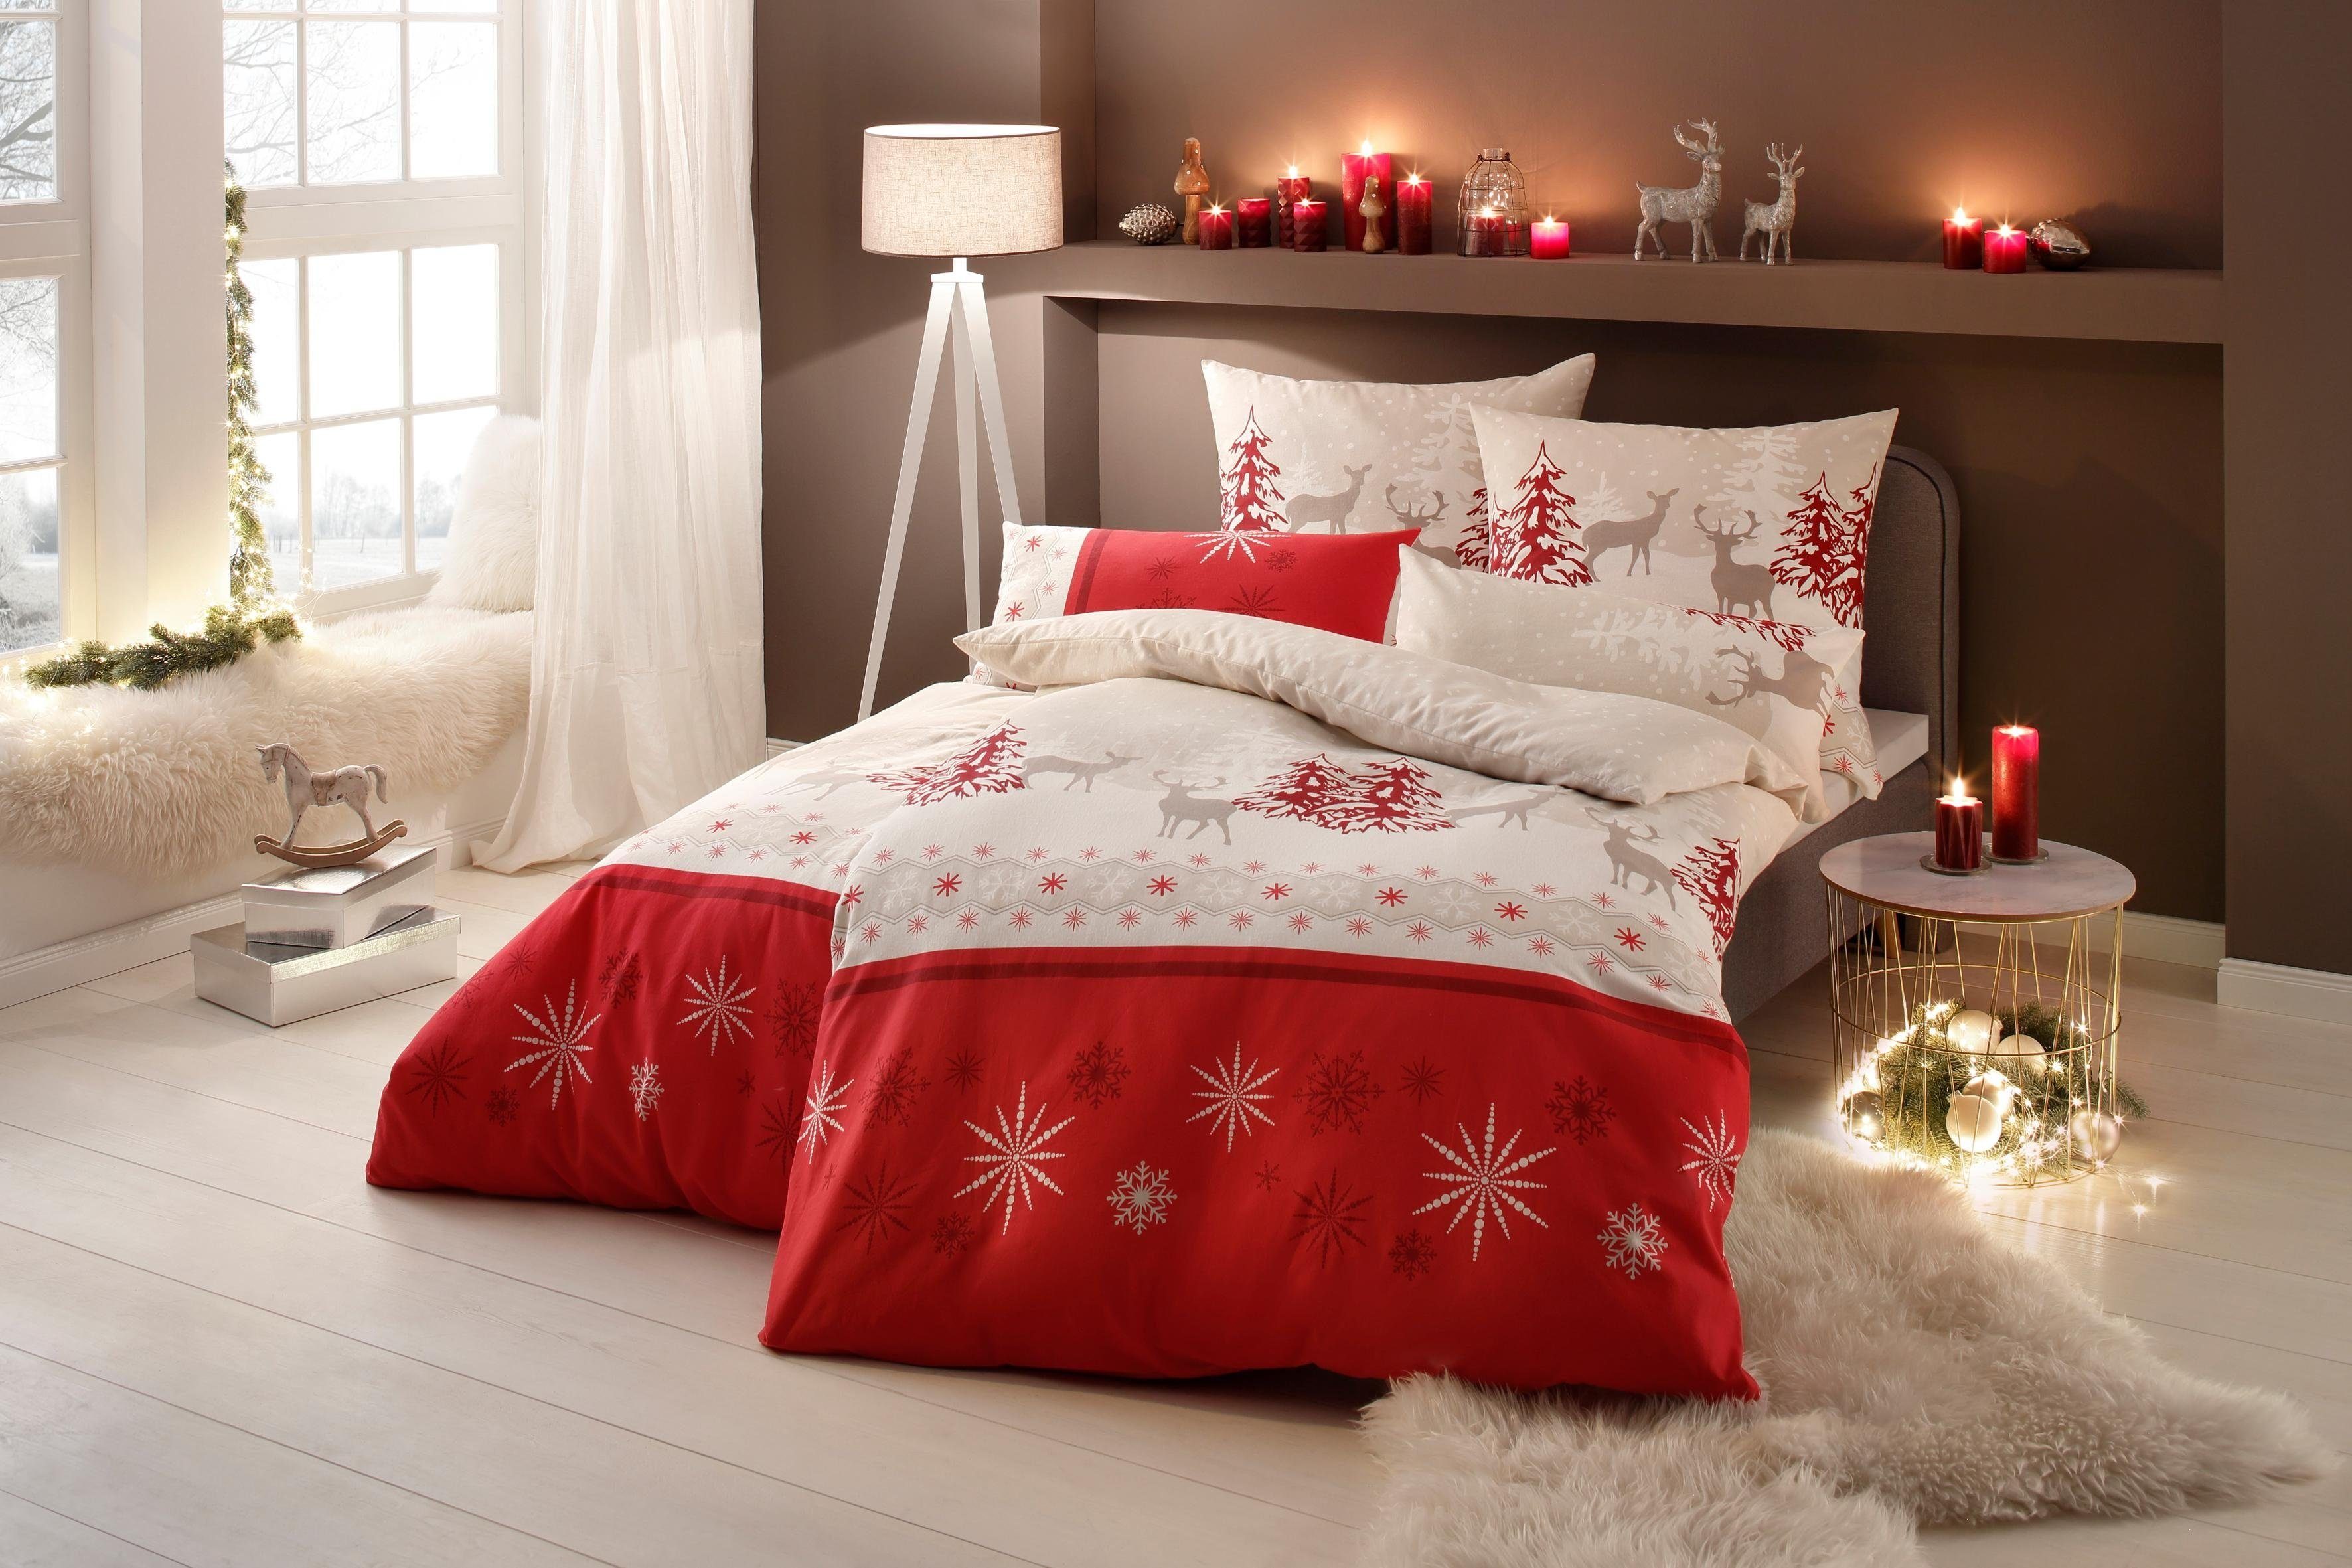 Bettwäsche Venua in Gr. 135x200 oder 155x220 cm, my home, Linon, 2 teilig, Winterbettwäsche, Weihnachtsbettwäsche rot/beige